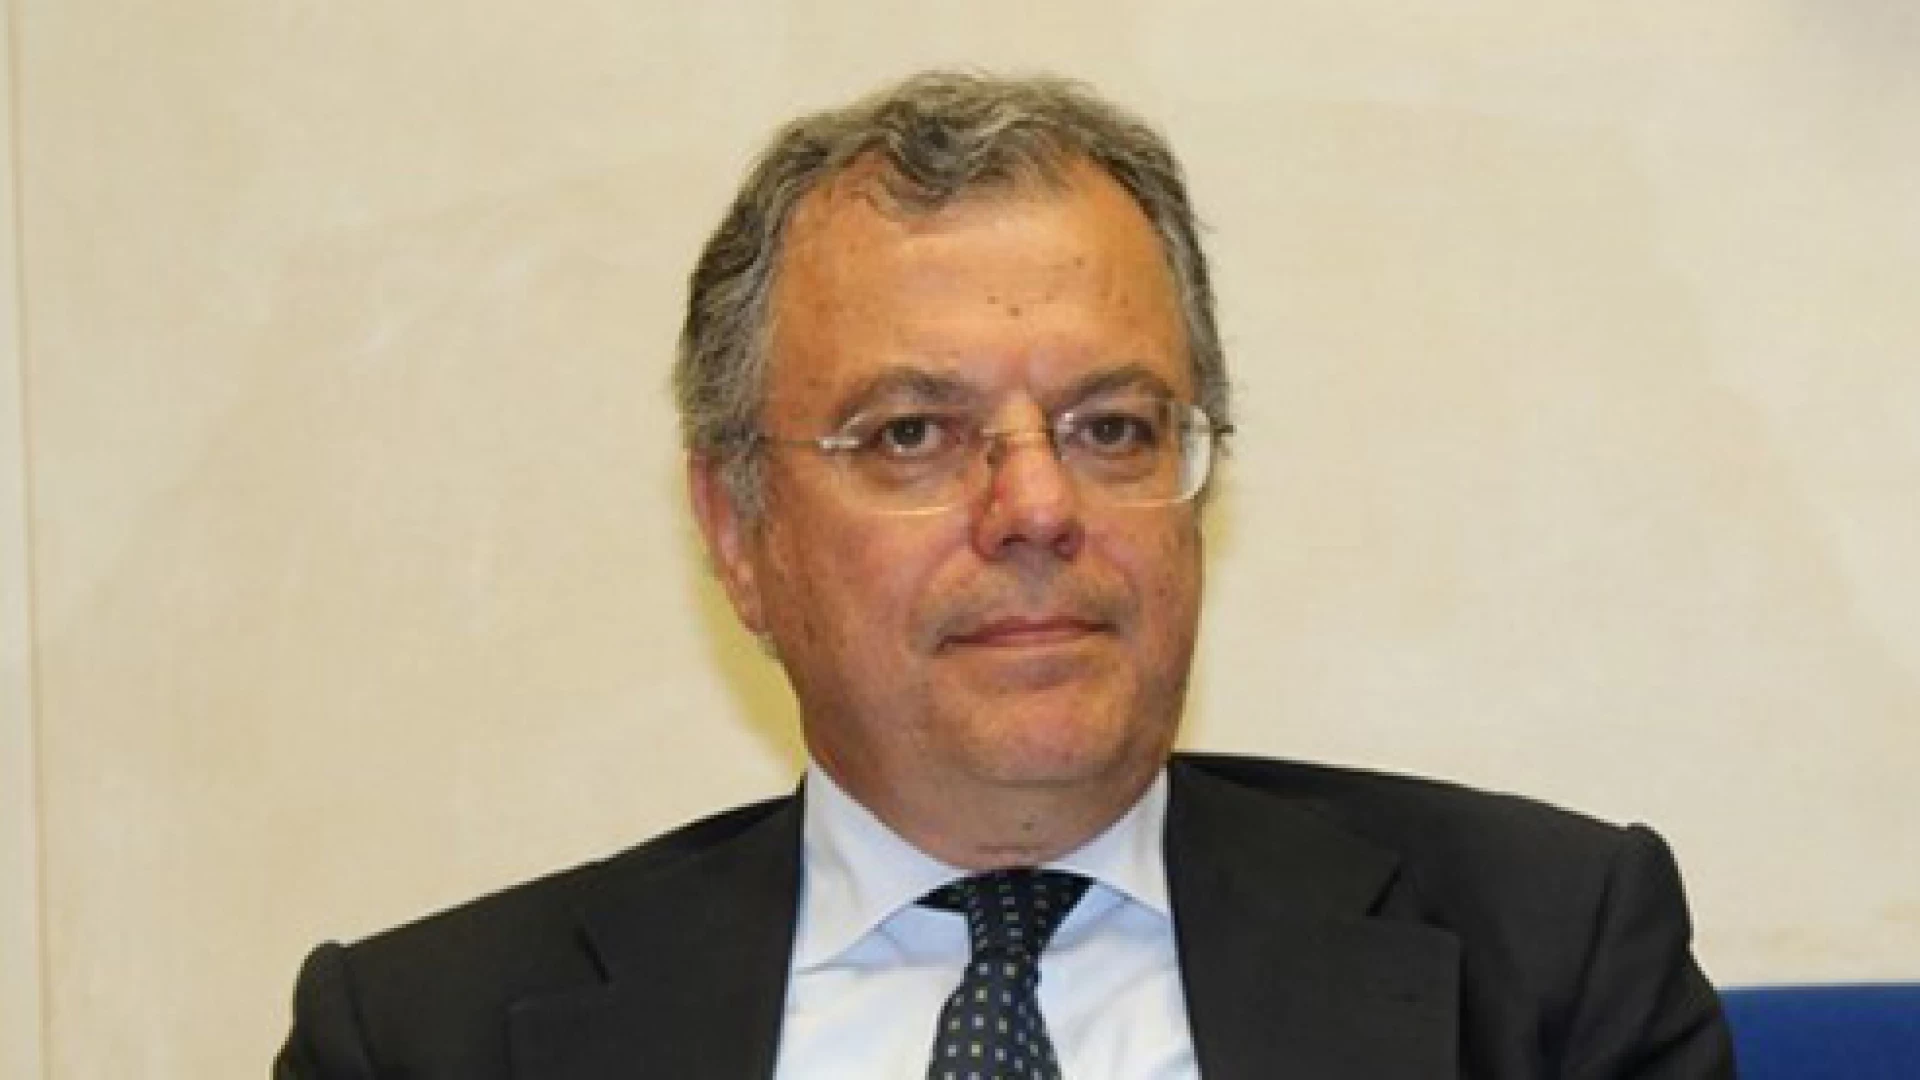 Vittorio Nola (M5S) a Toma: "No a ingerenze politiche nella governance regionale"